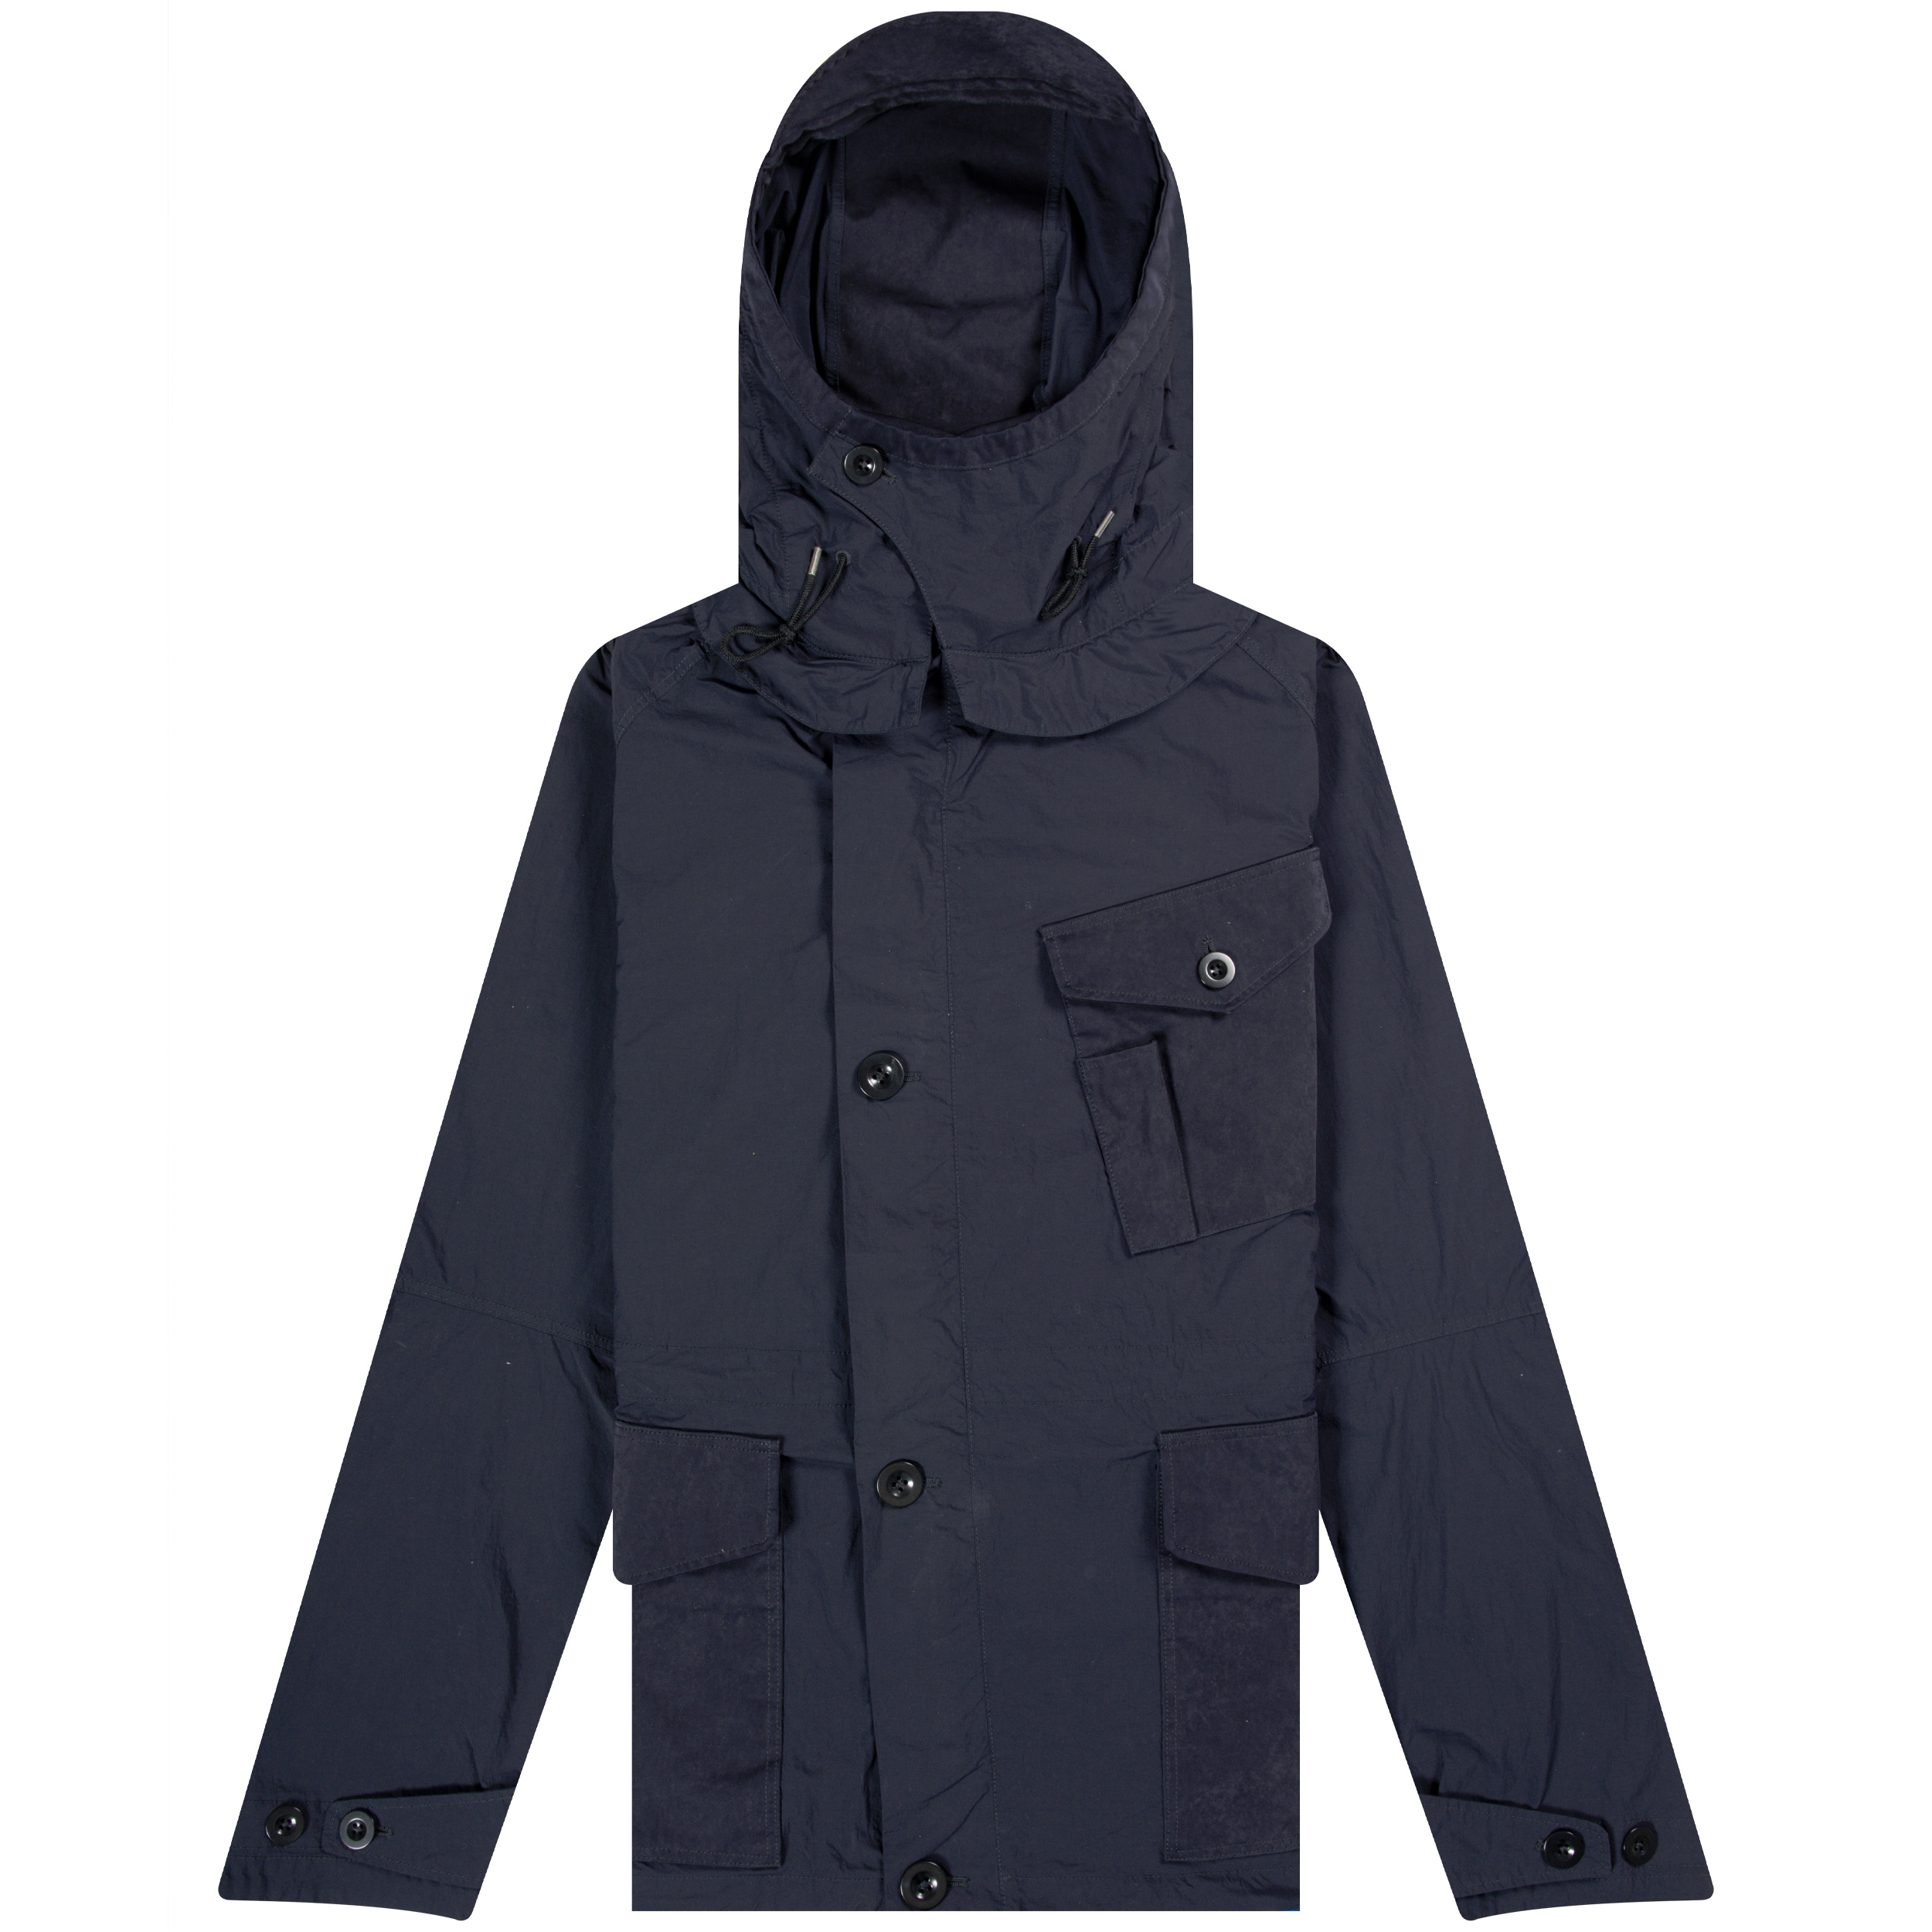 TEN-C ’Mid Layer’ Full Zip Hooded Jacket Navy